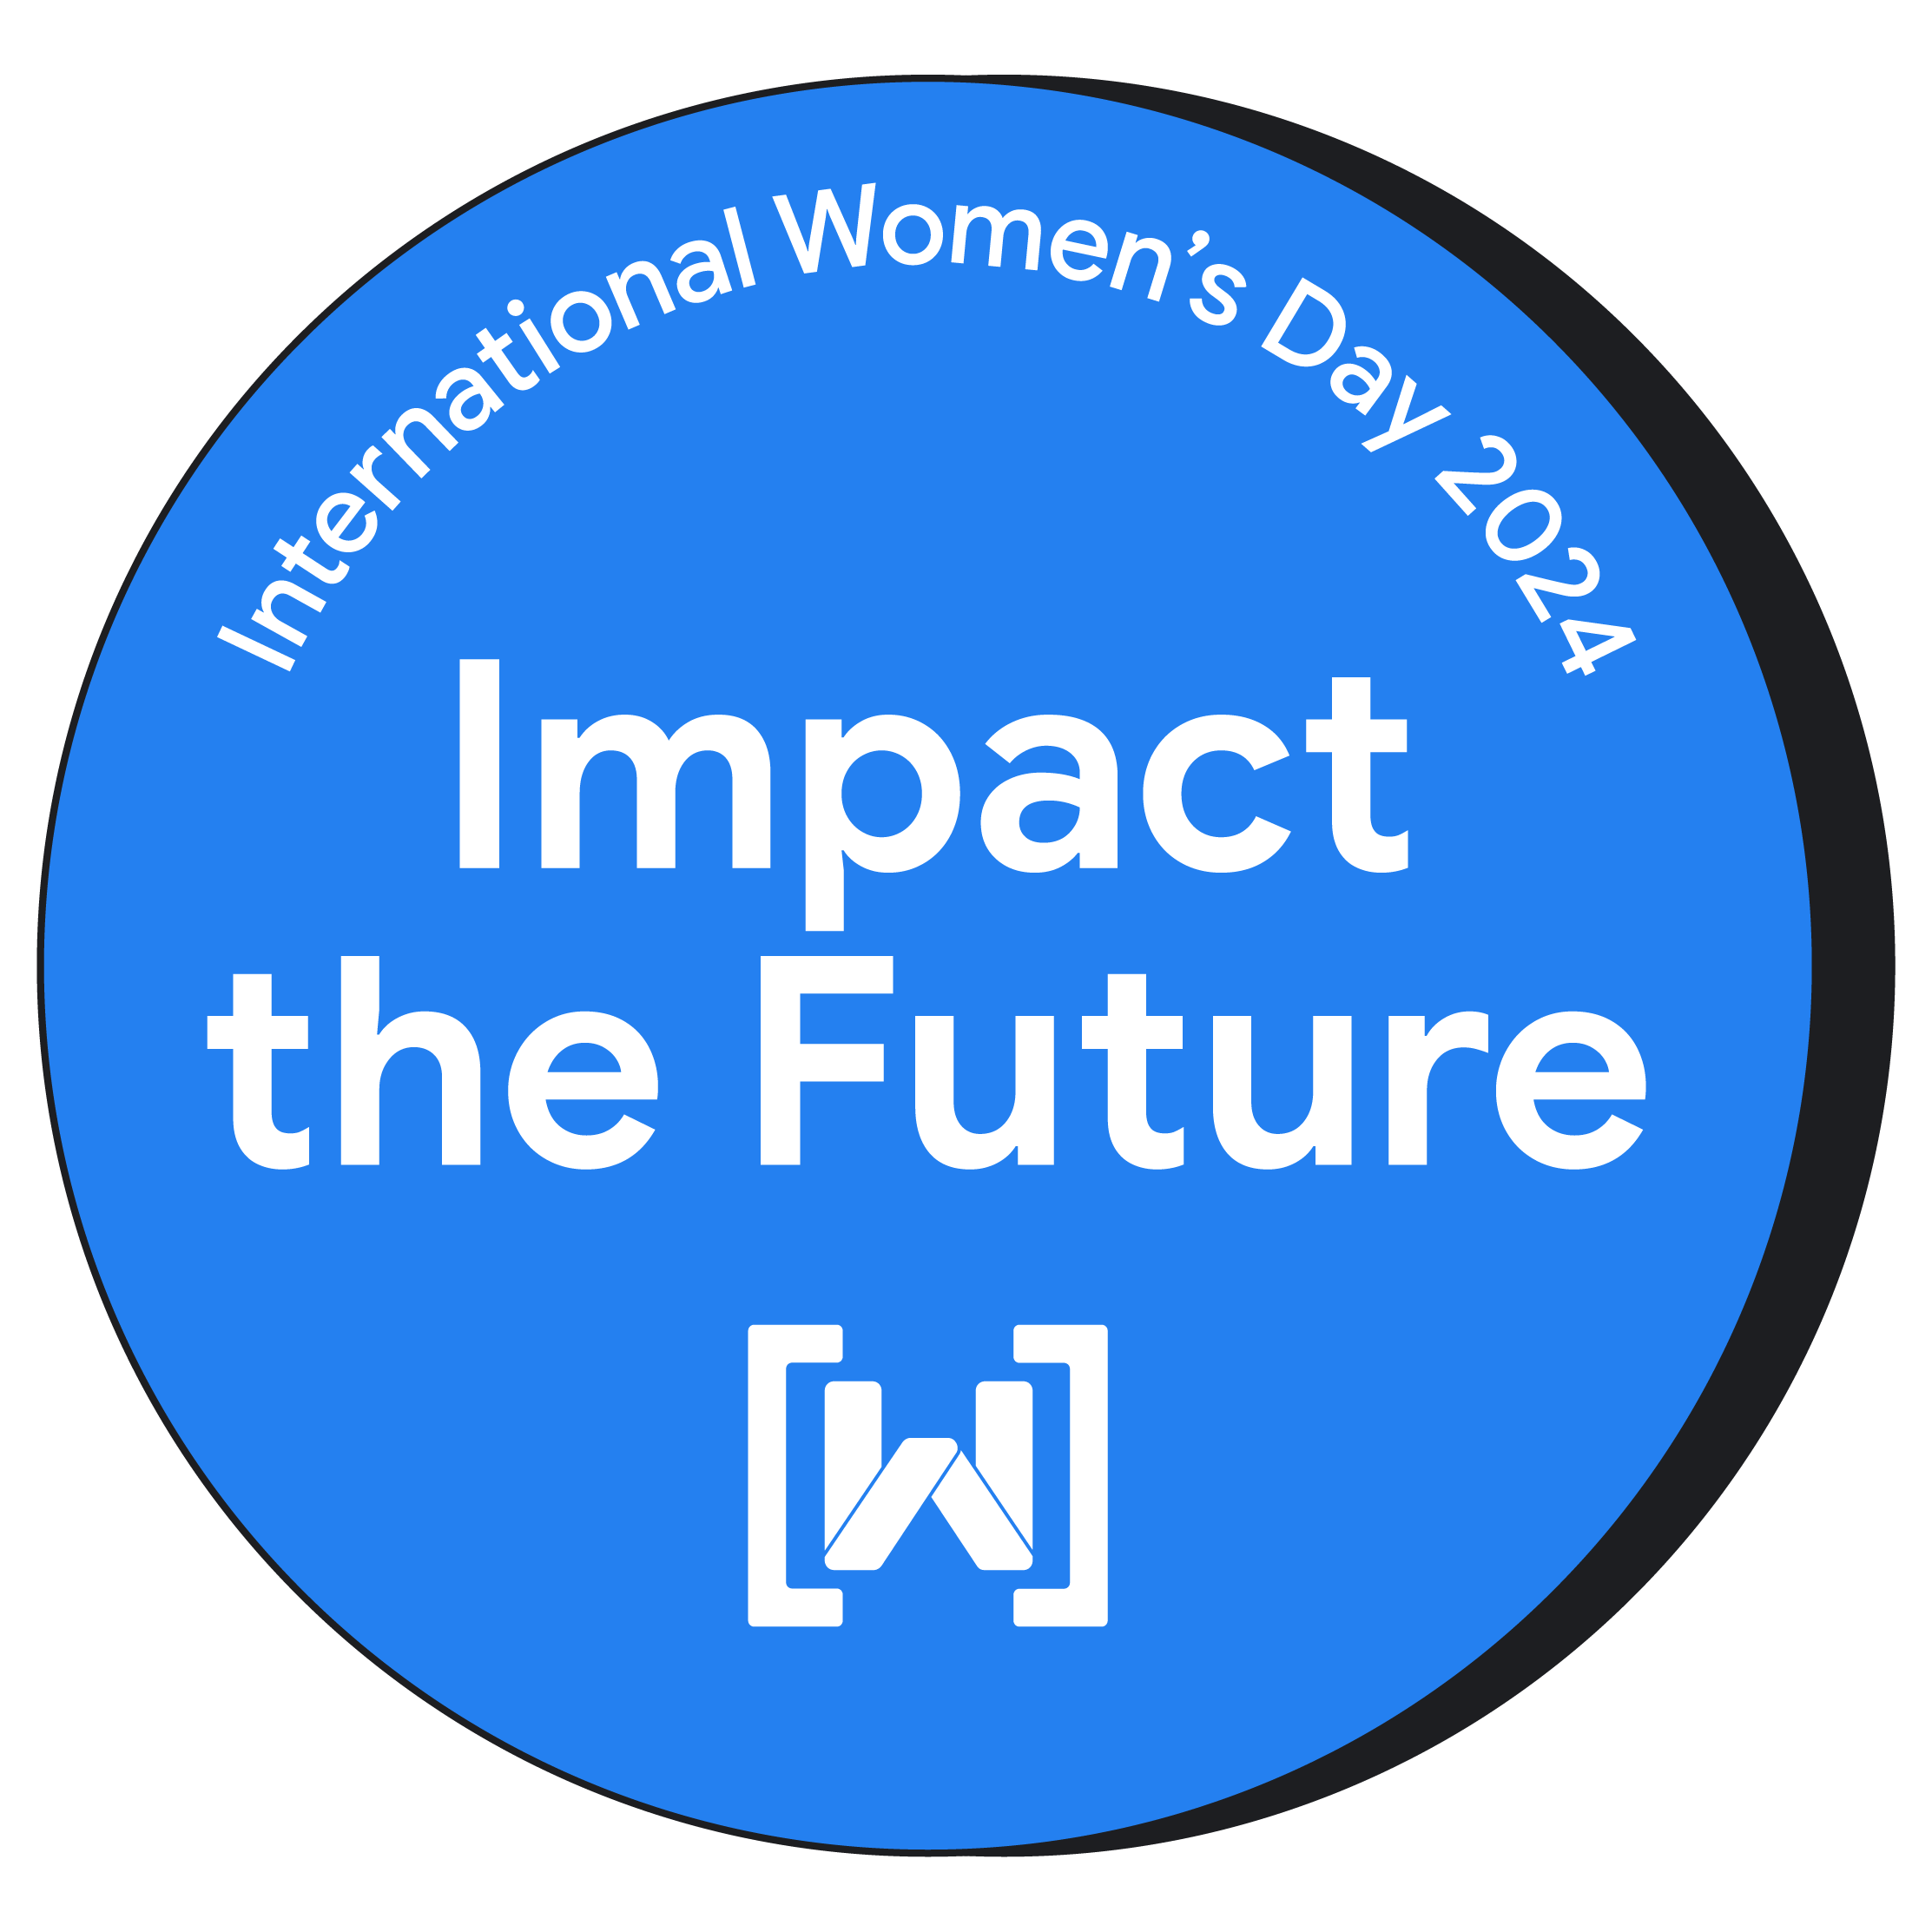 2024 年国際女性デーを祝う円形バッジ。バッジの背景は明るい青色で、中央に目立つように「Impact the Future」と表示されています。Women Techmakers のロゴはバッジの下部にあります。